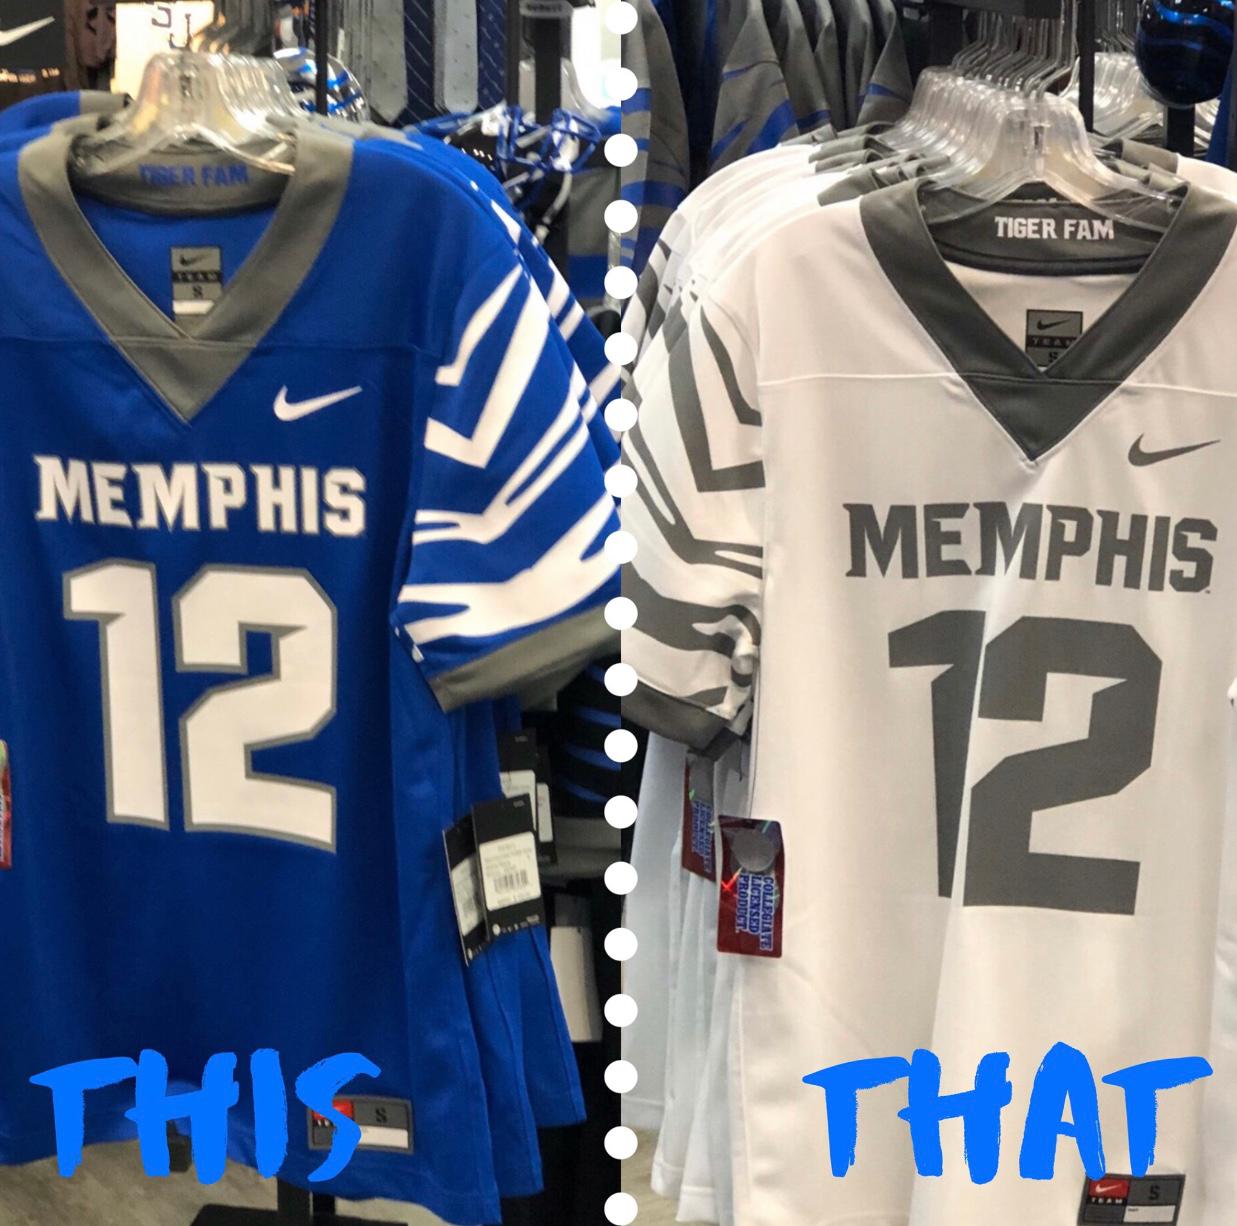 Memphis Tiger Football jerseys